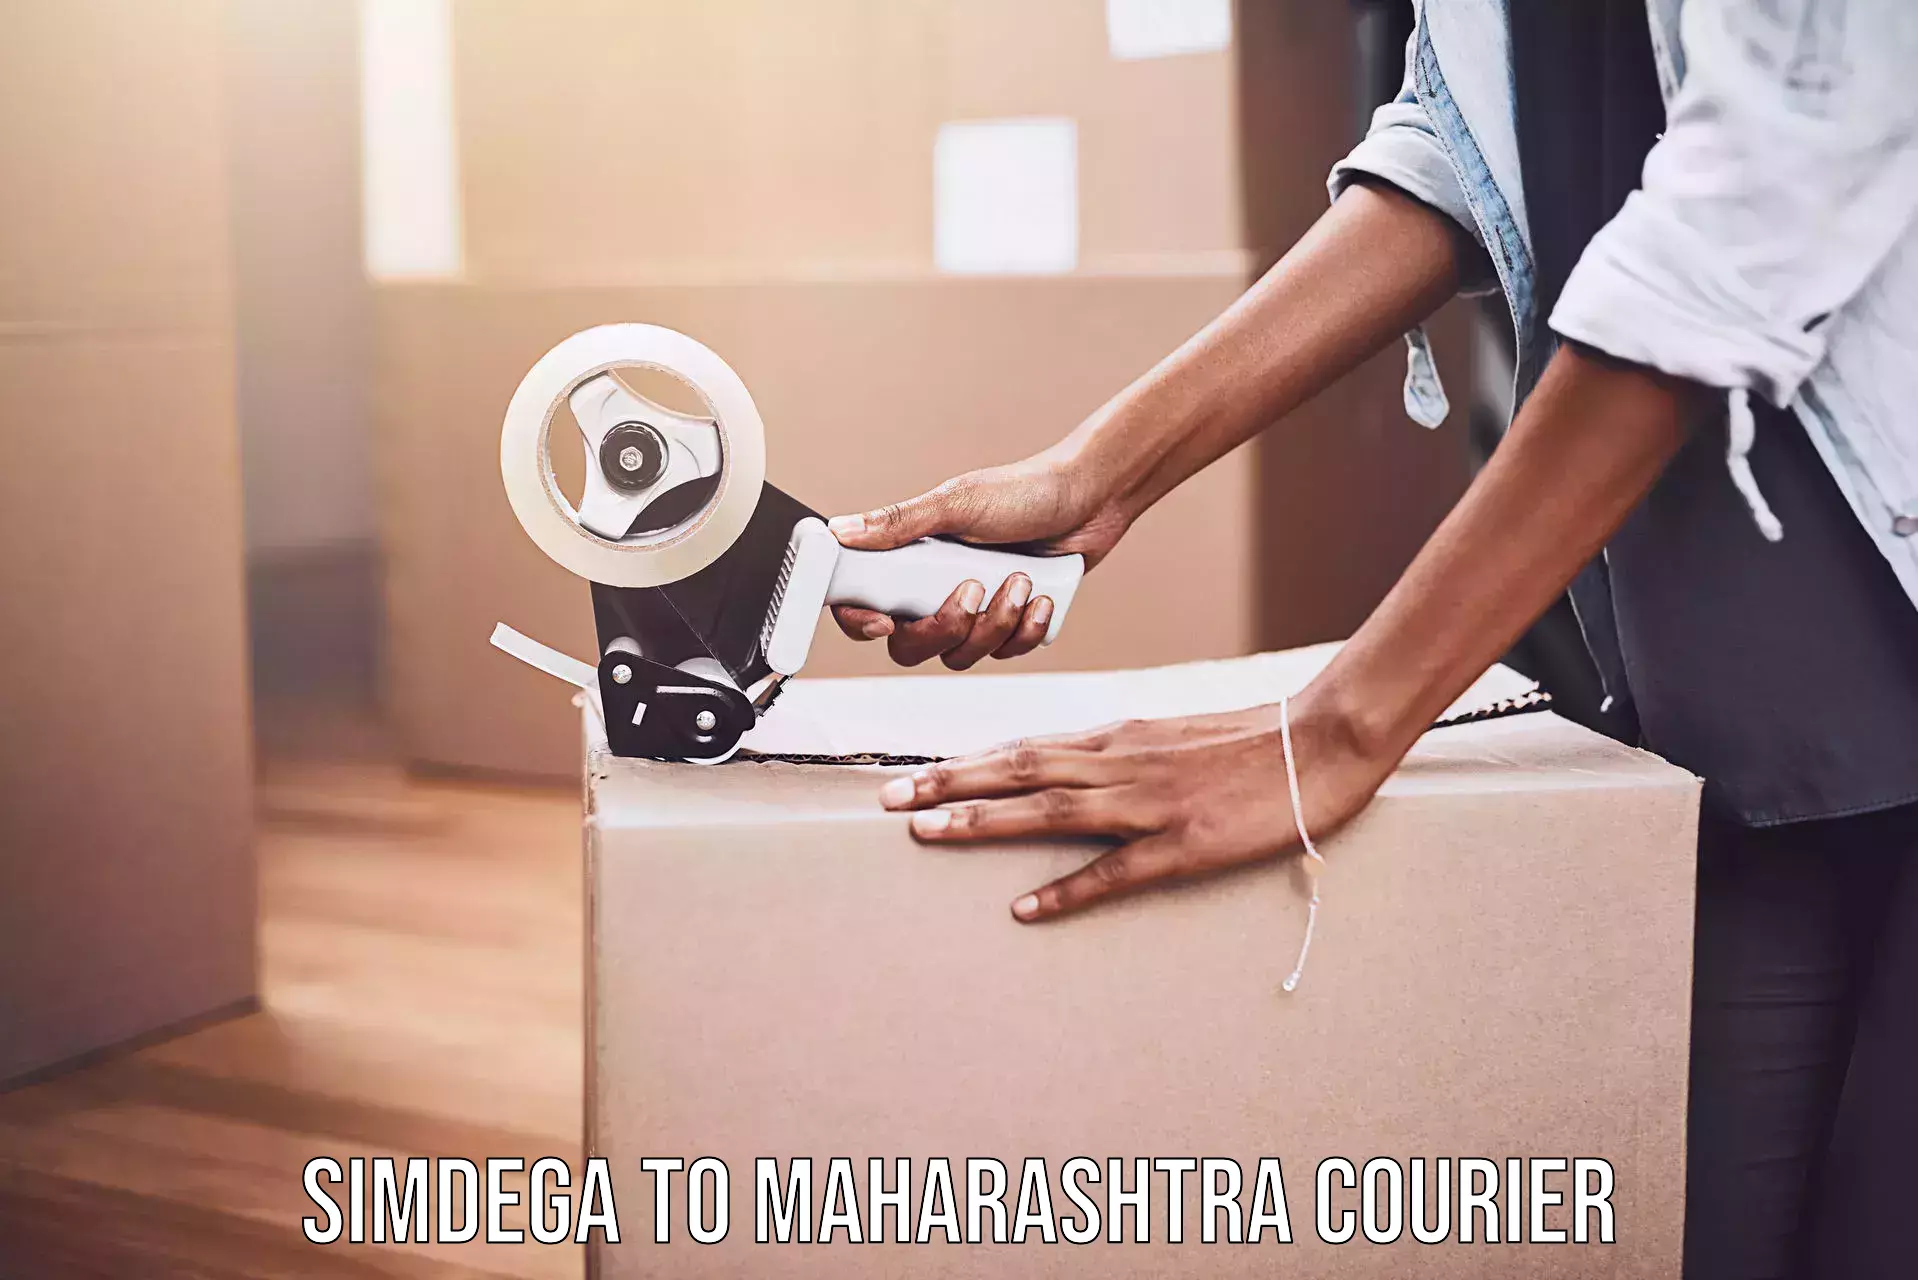 24-hour courier service Simdega to Palghar